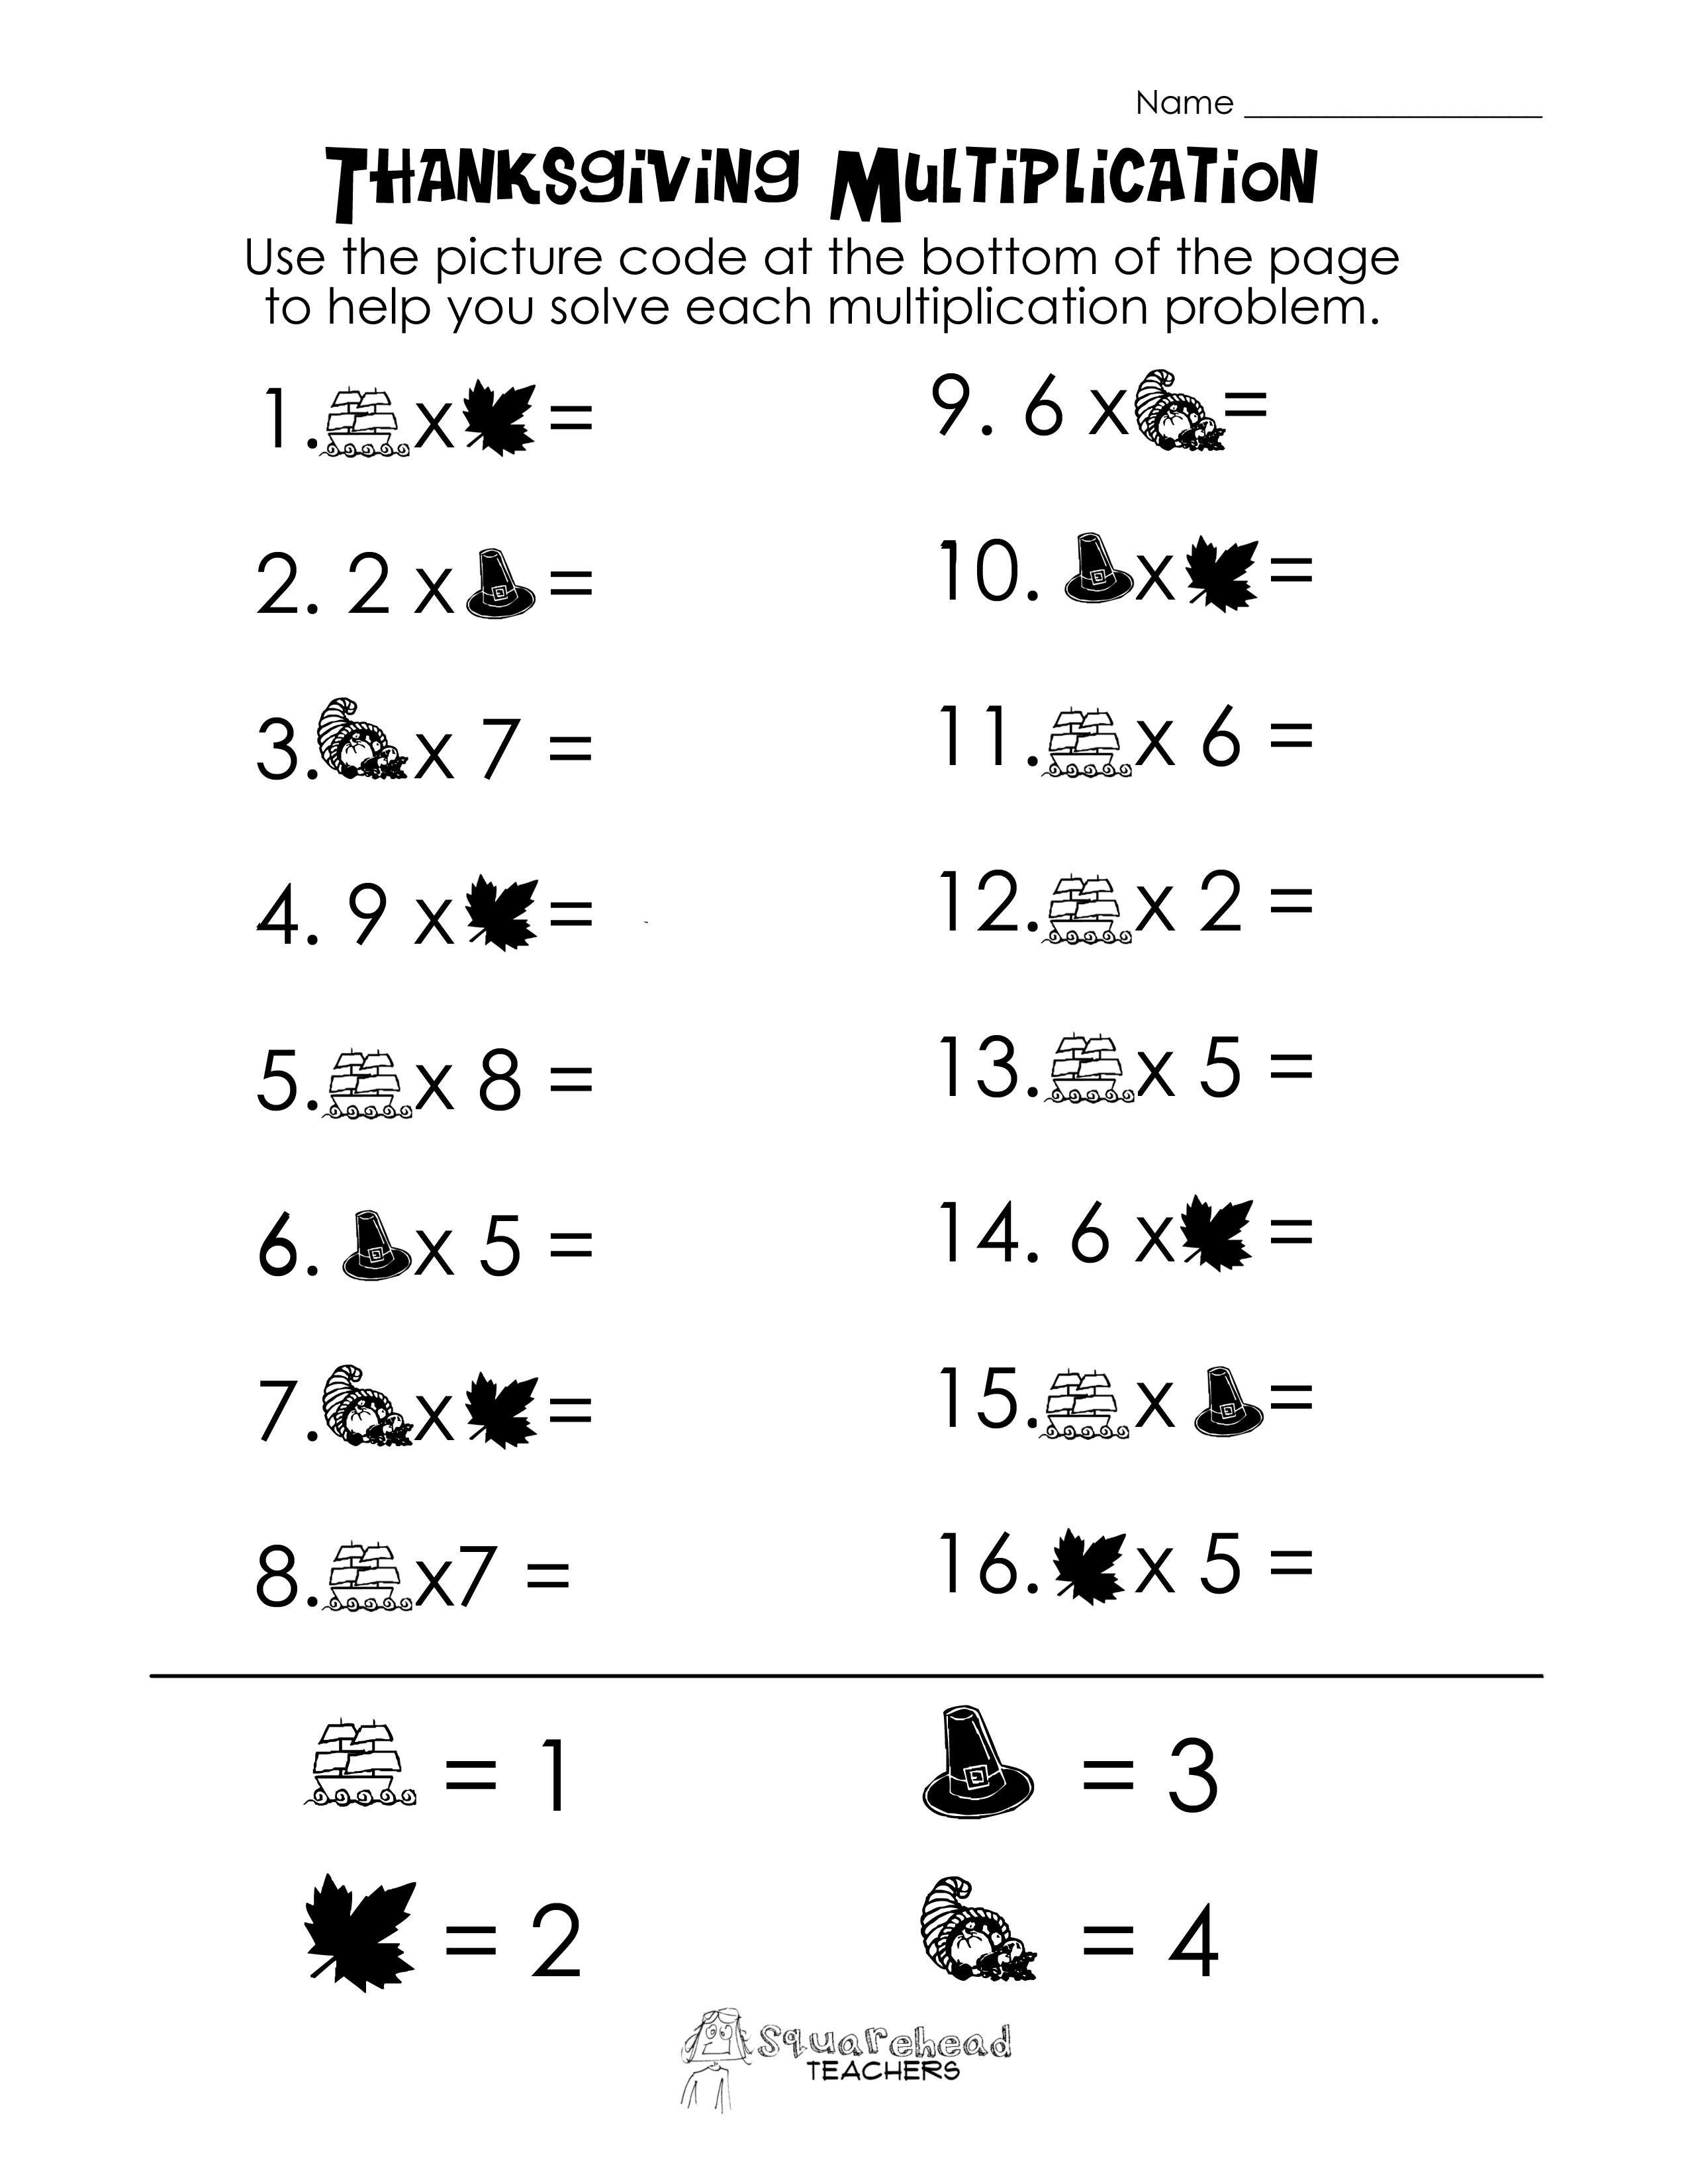 Multiplication Thanksgiving Math Worksheet